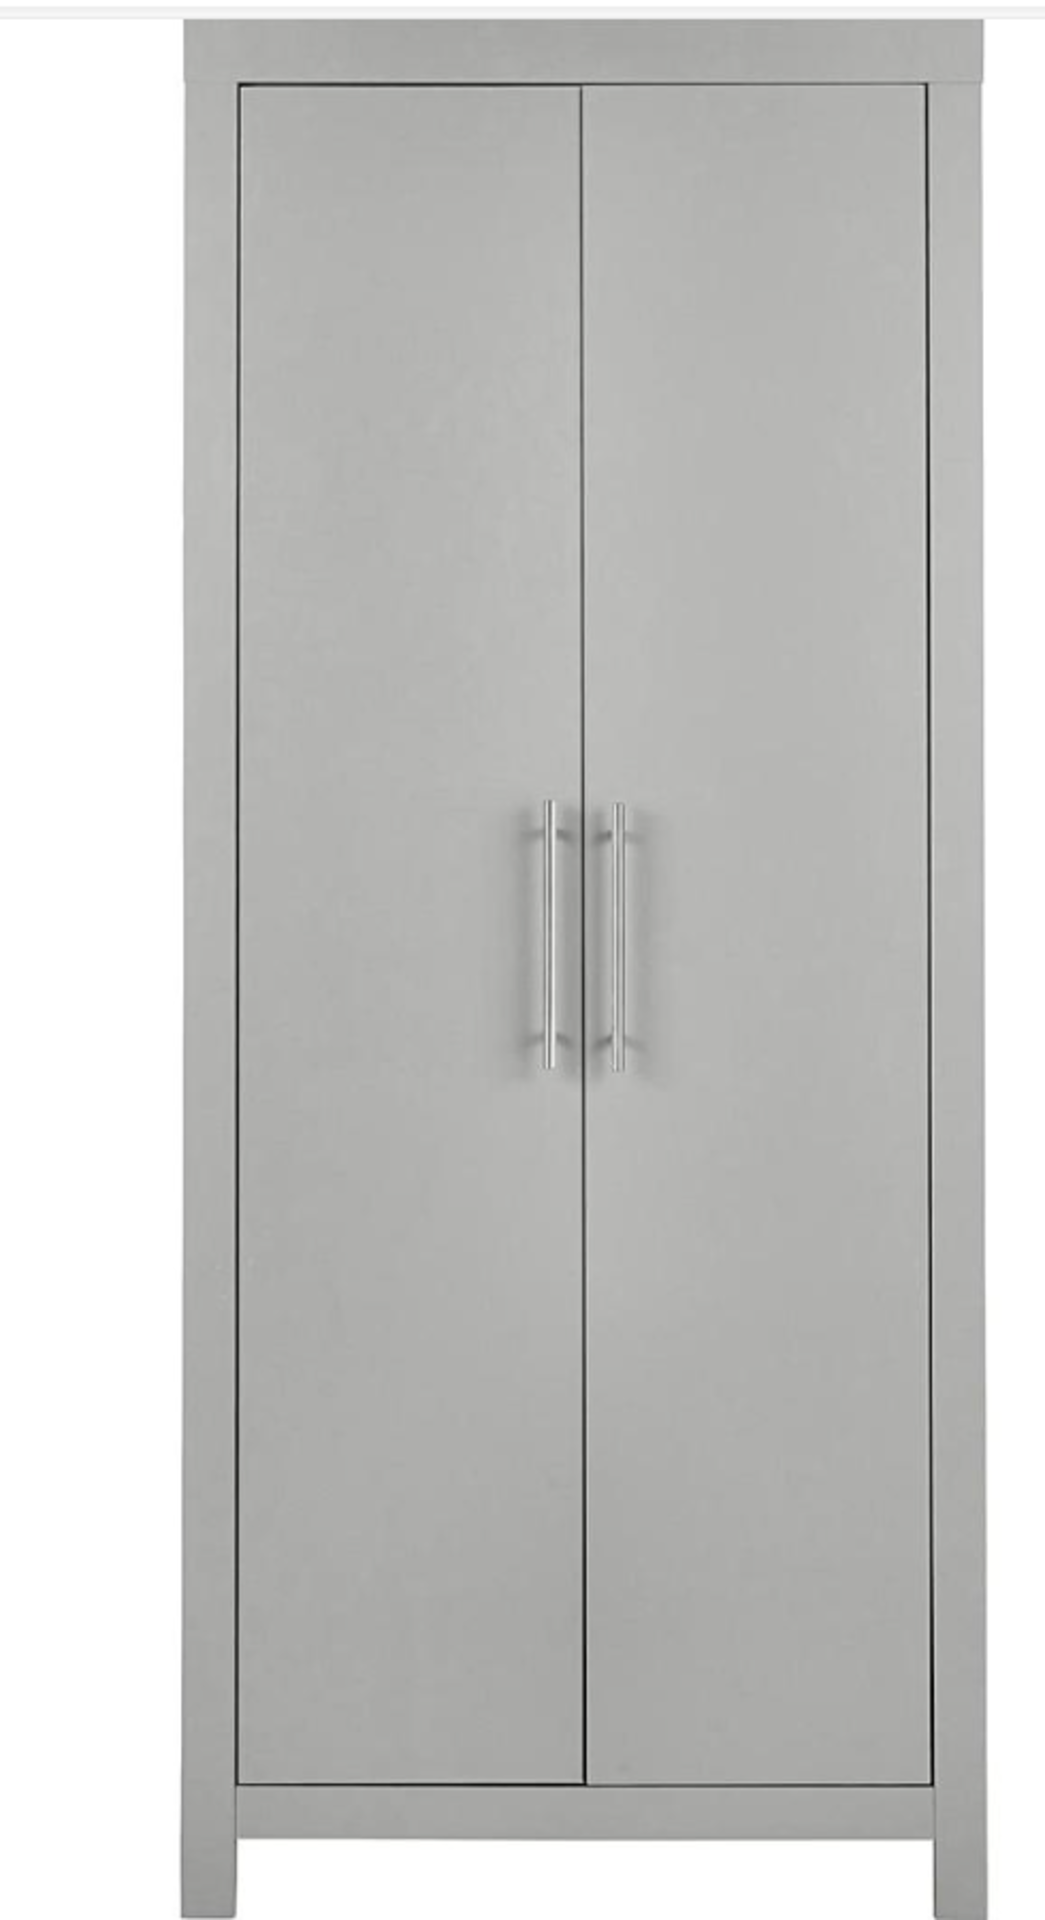 Dakota 2 Door Wardrobe. - ER20. RRP £349.00. Part of At Home Collection, the Dakota Bedroom range is